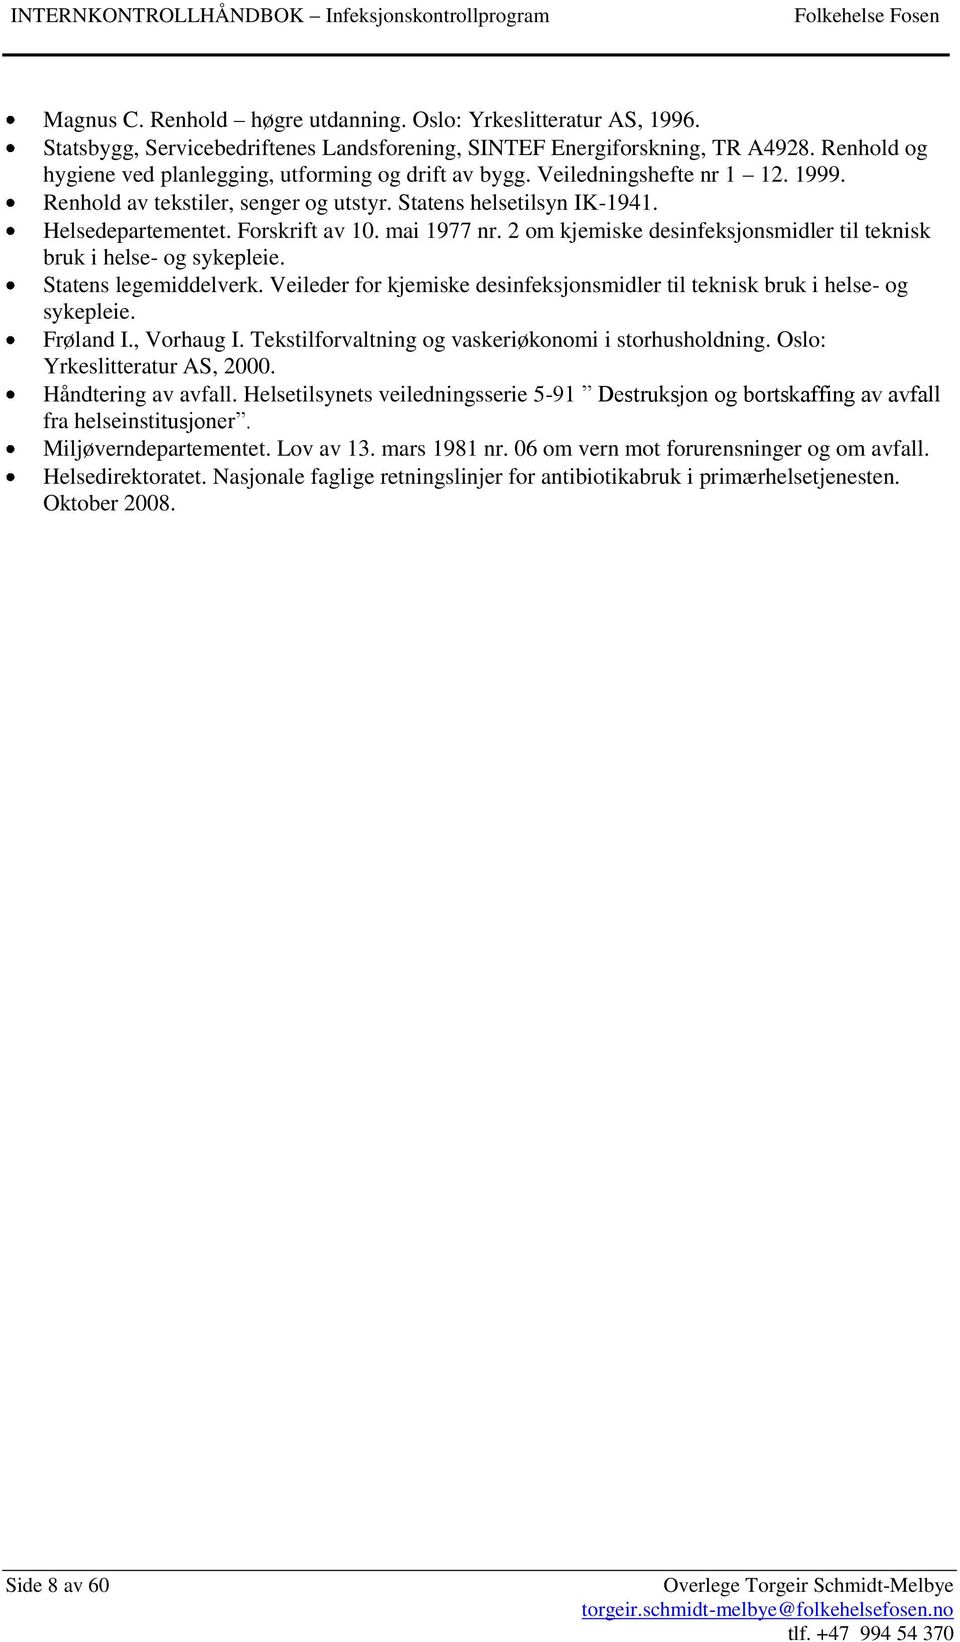 Forskrift av 10. mai 1977 nr. 2 om kjemiske desinfeksjonsmidler til teknisk bruk i helse- og sykepleie. Statens legemiddelverk.